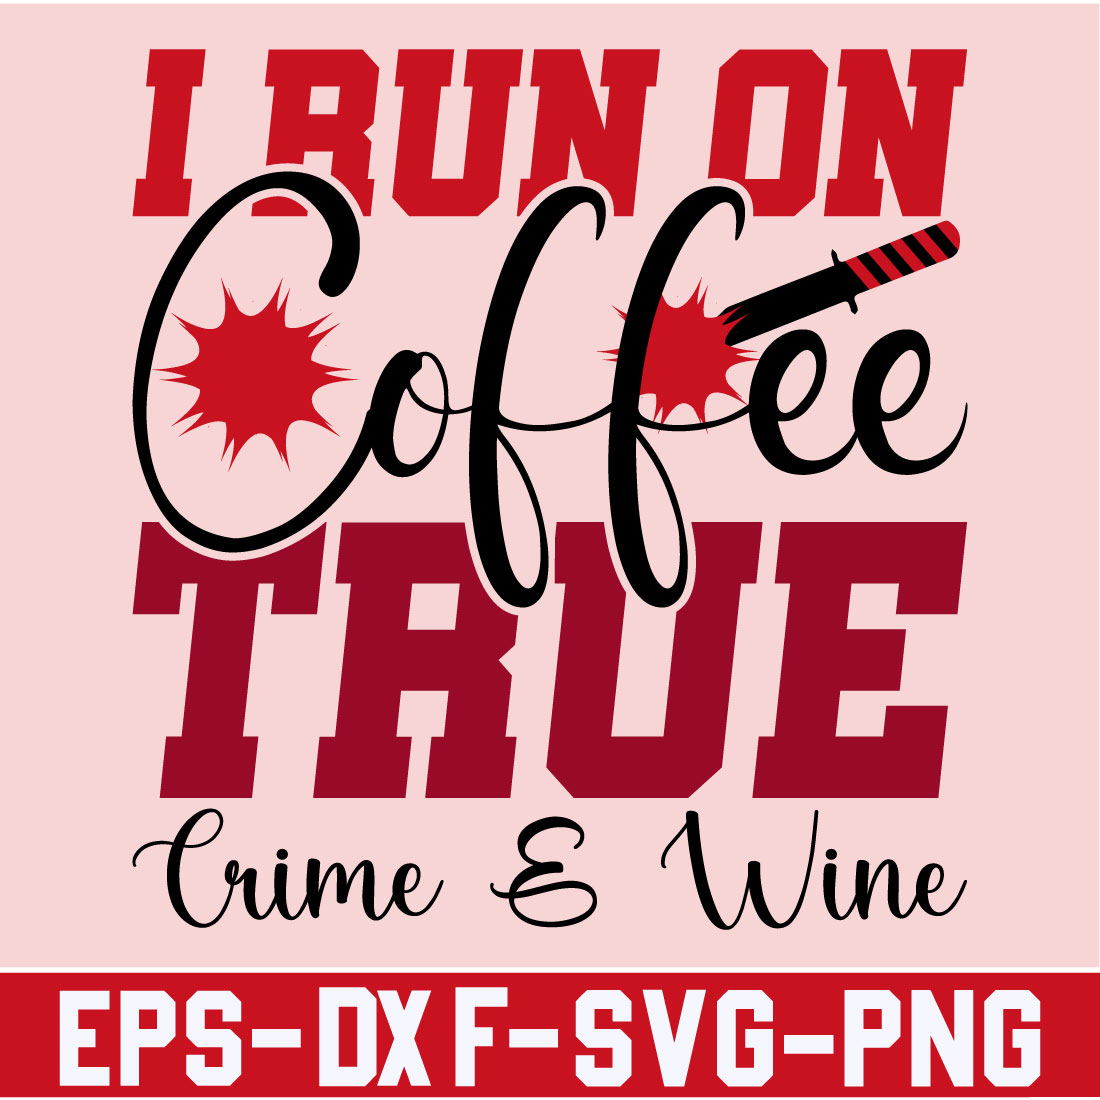 I Run On Coffee True Crime & Wine cover image.